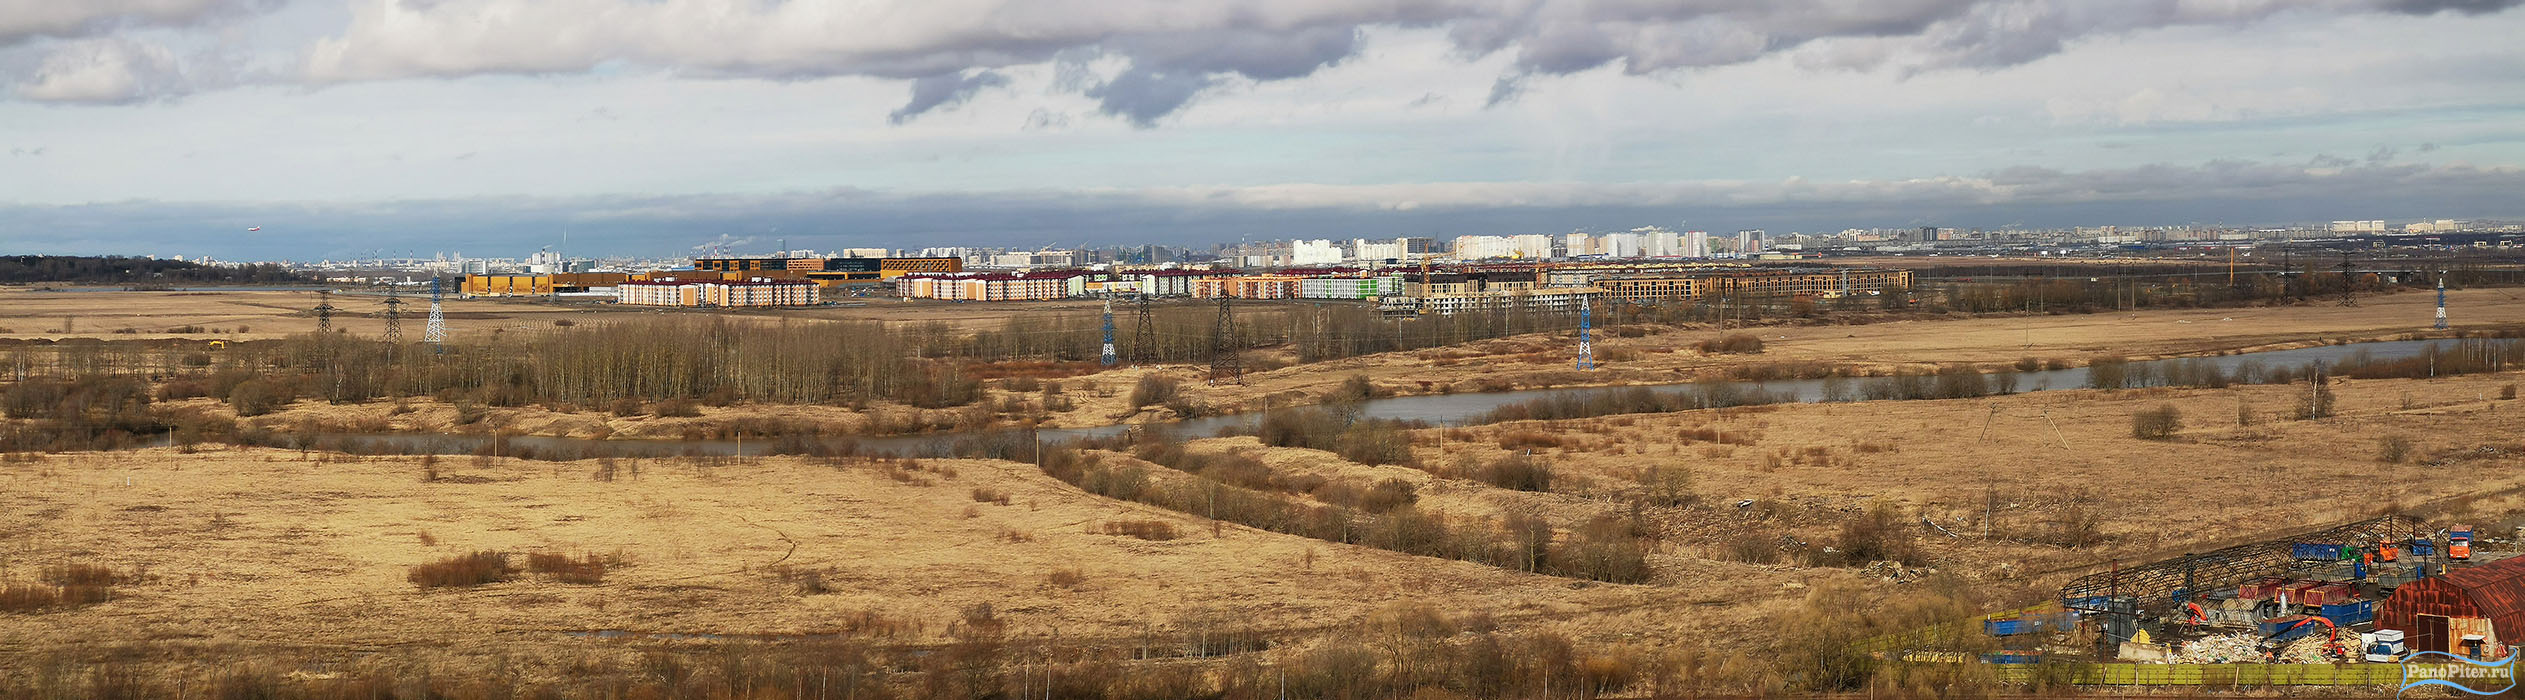 ТЭЦ на Кузьминском шоссе. Пушкин (2020 год)